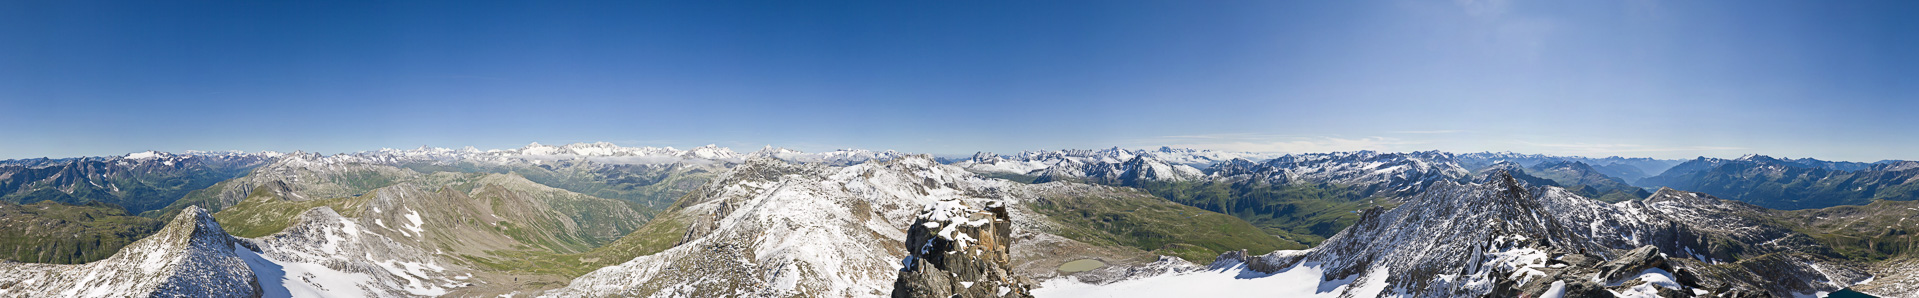 360°-Panorama vom zentralen Punkt der Schweiz mit allumfassender Aussicht.